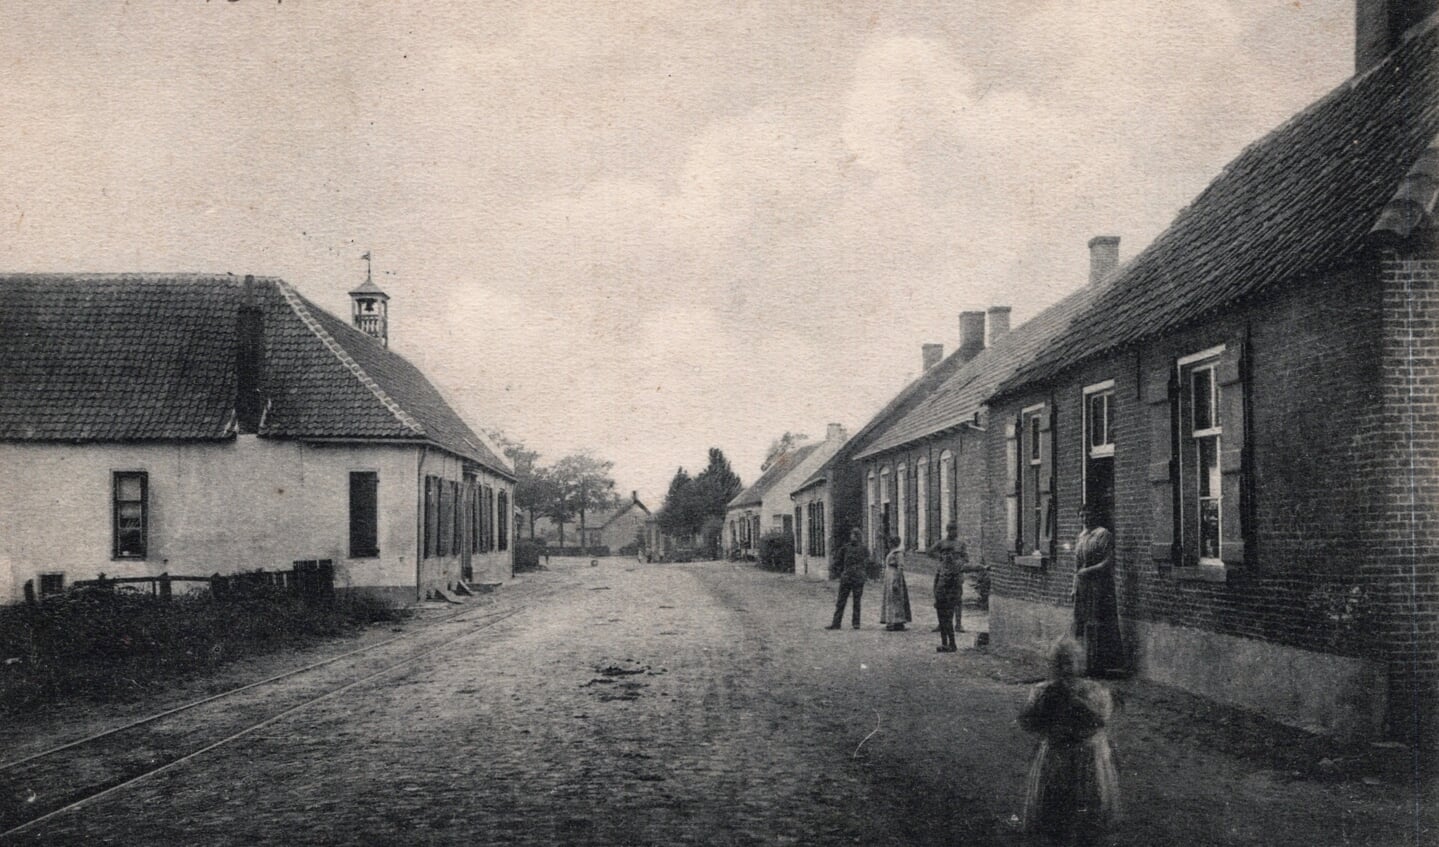 Een vroege ansichtkaart van de Hubertusbrouwerij te Wernhout. De brouwerij is het witte gebouw links op de foto. Op het dak de bel die onder andere werd geluid bij brand. 